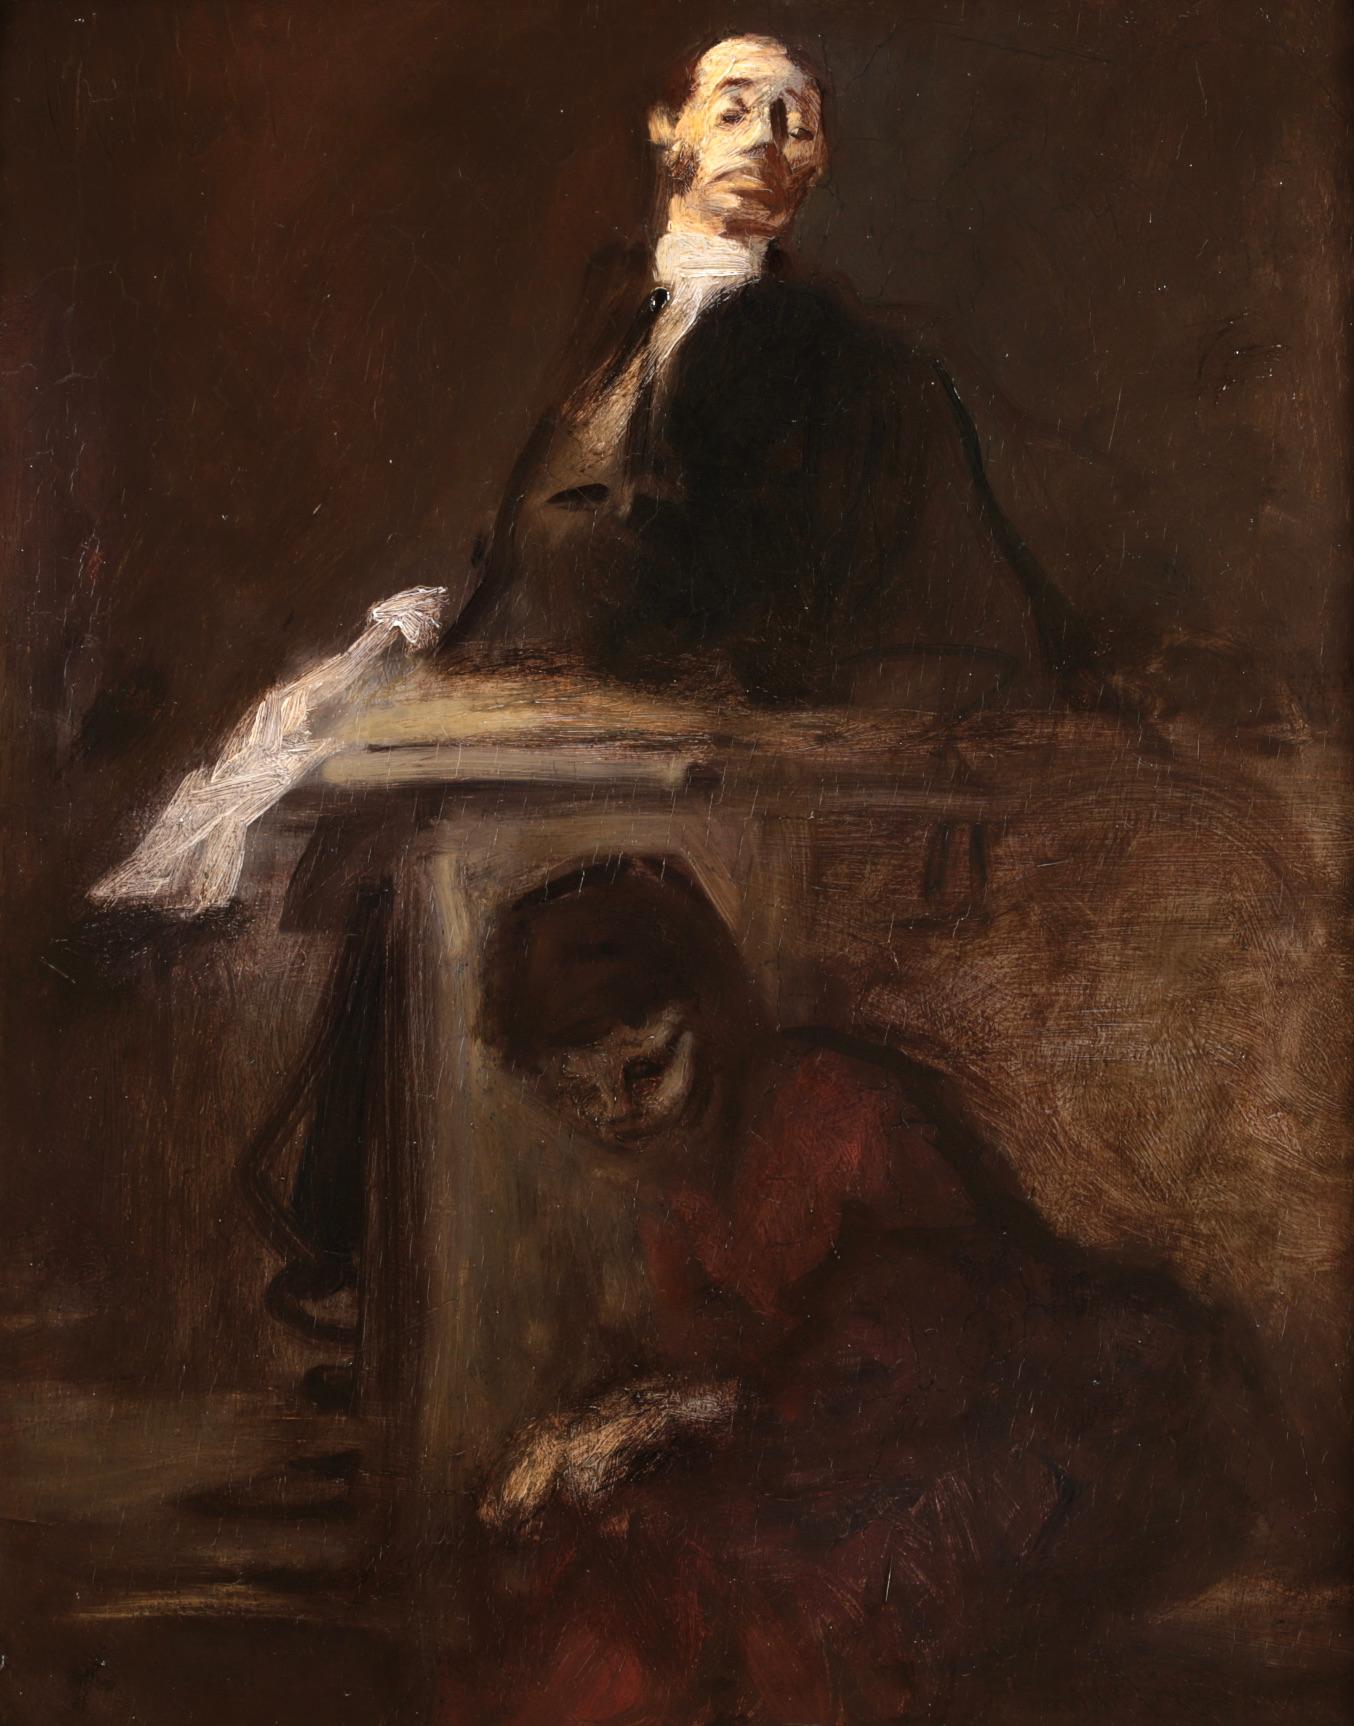 Le Maitre du Barreau - French Impressionist Portrait Oil by Jean Louis Forain 1